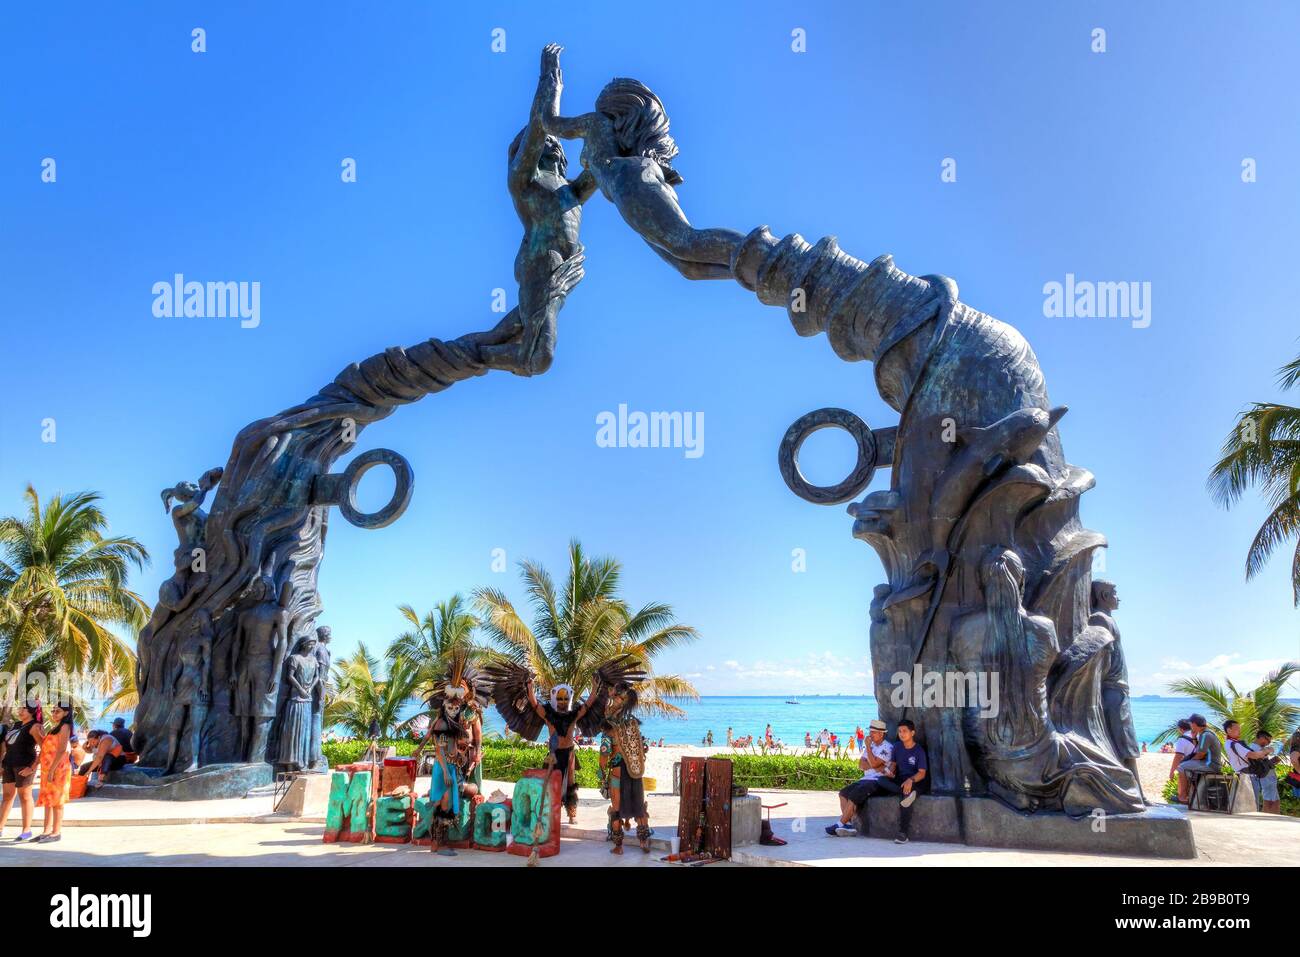 PLAYA DEL CARMEN, MEXIQUE - DEC. 26, 2019: Les visiteurs se mêlent sur la plage du parc Fundadores à Playa del Carmen sur la côte des Caraïbes de la Riviera Maya avec p Banque D'Images